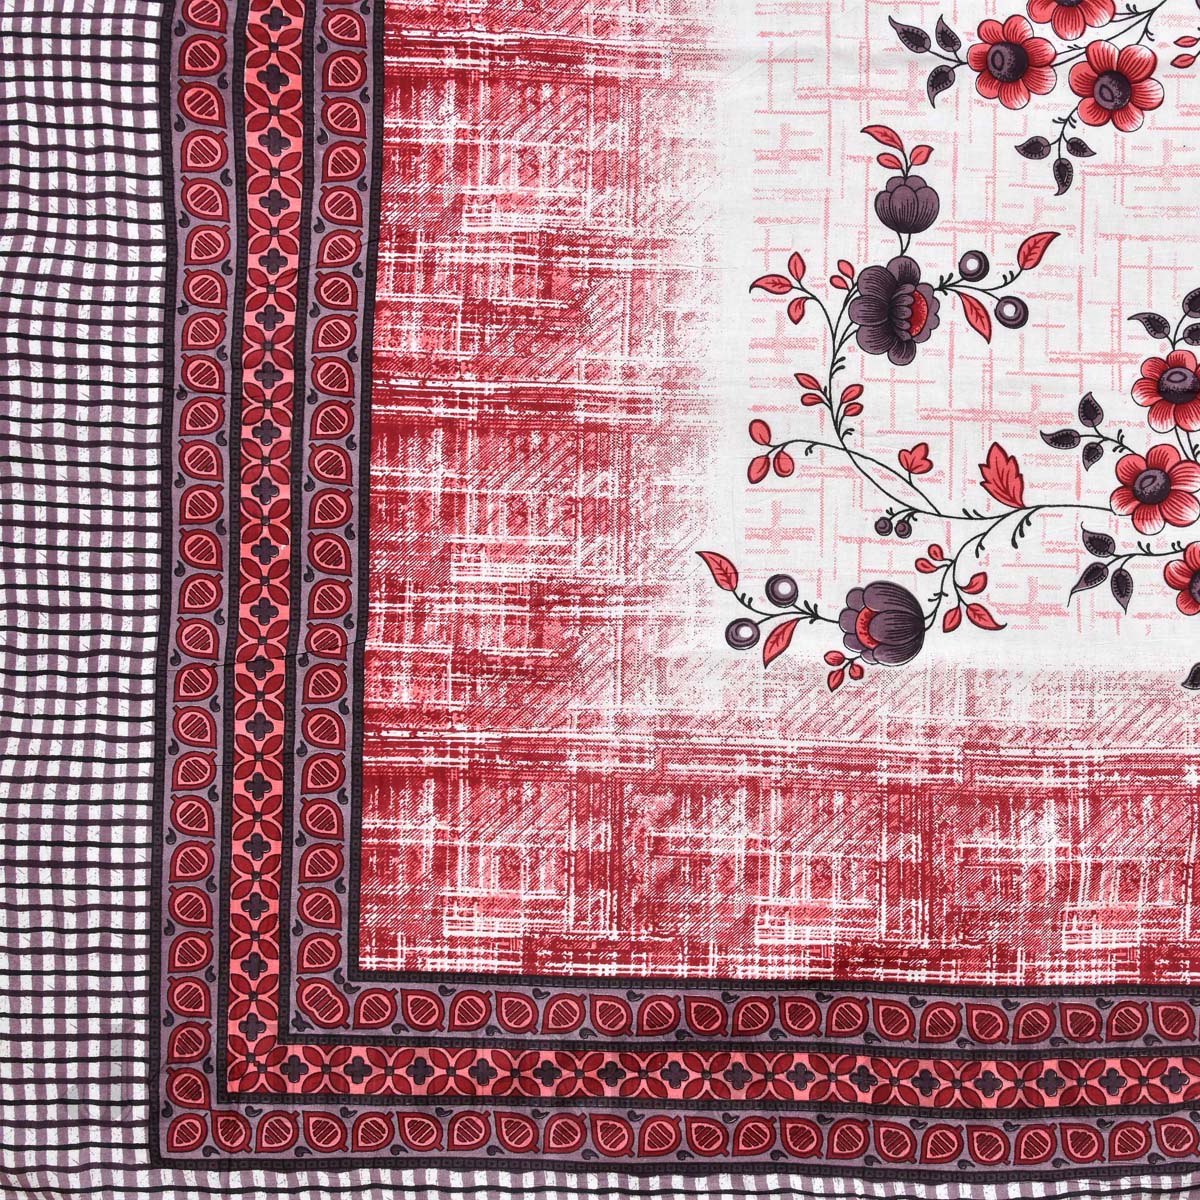 AC Room Dohar Damask Red Rose 210 GSM Pure Cotton Summer Blanket